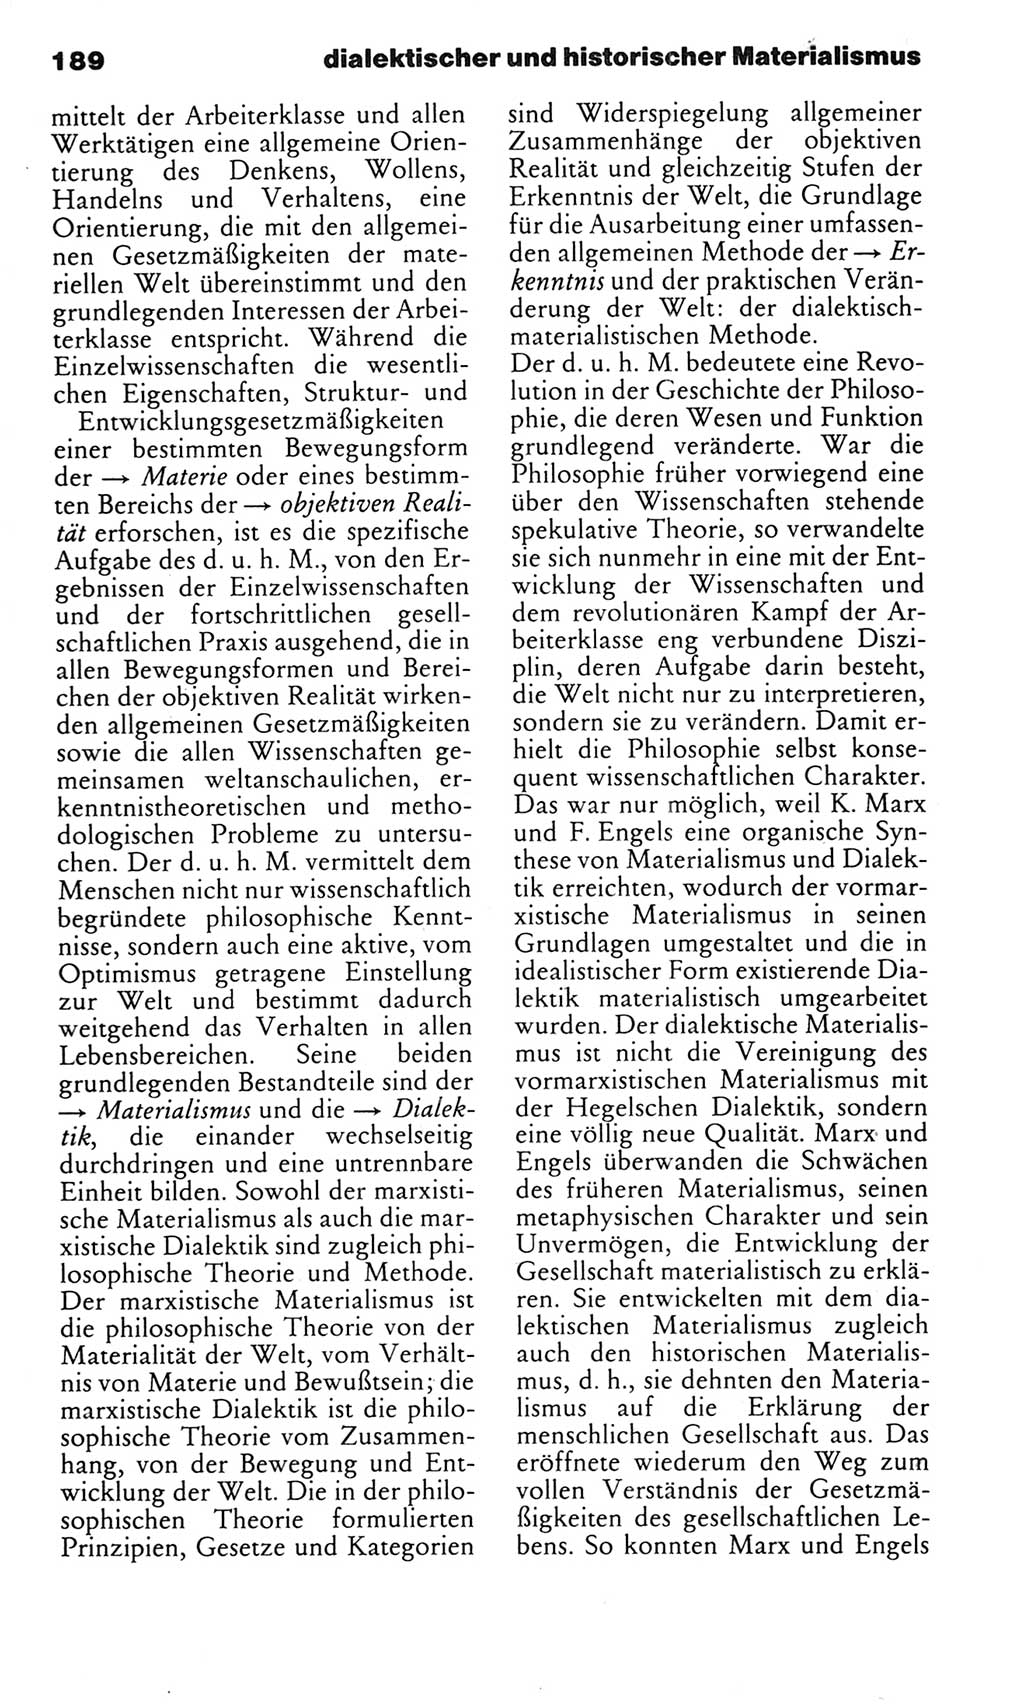 Kleines politisches Wörterbuch [Deutsche Demokratische Republik (DDR)] 1983, Seite 189 (Kl. pol. Wb. DDR 1983, S. 189)